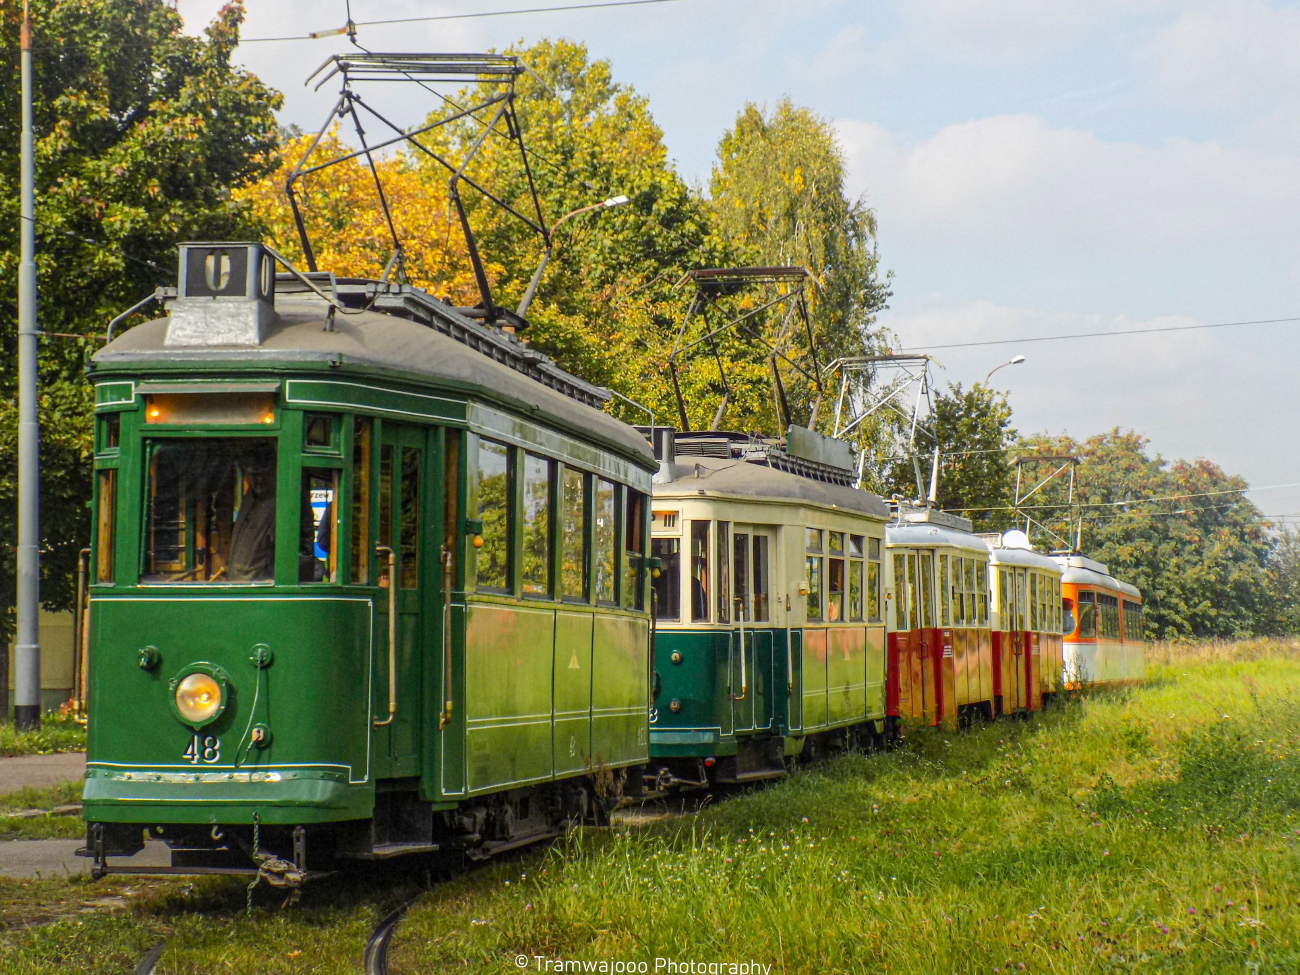 Lodz, Lilpop II č. 48; Lodz, FWŚ 5ND1 č. 644; Lodz, Duewag GT6 č. 805; Lodz — 40 years of the Old Tram Lovers Club — 2.10.2021